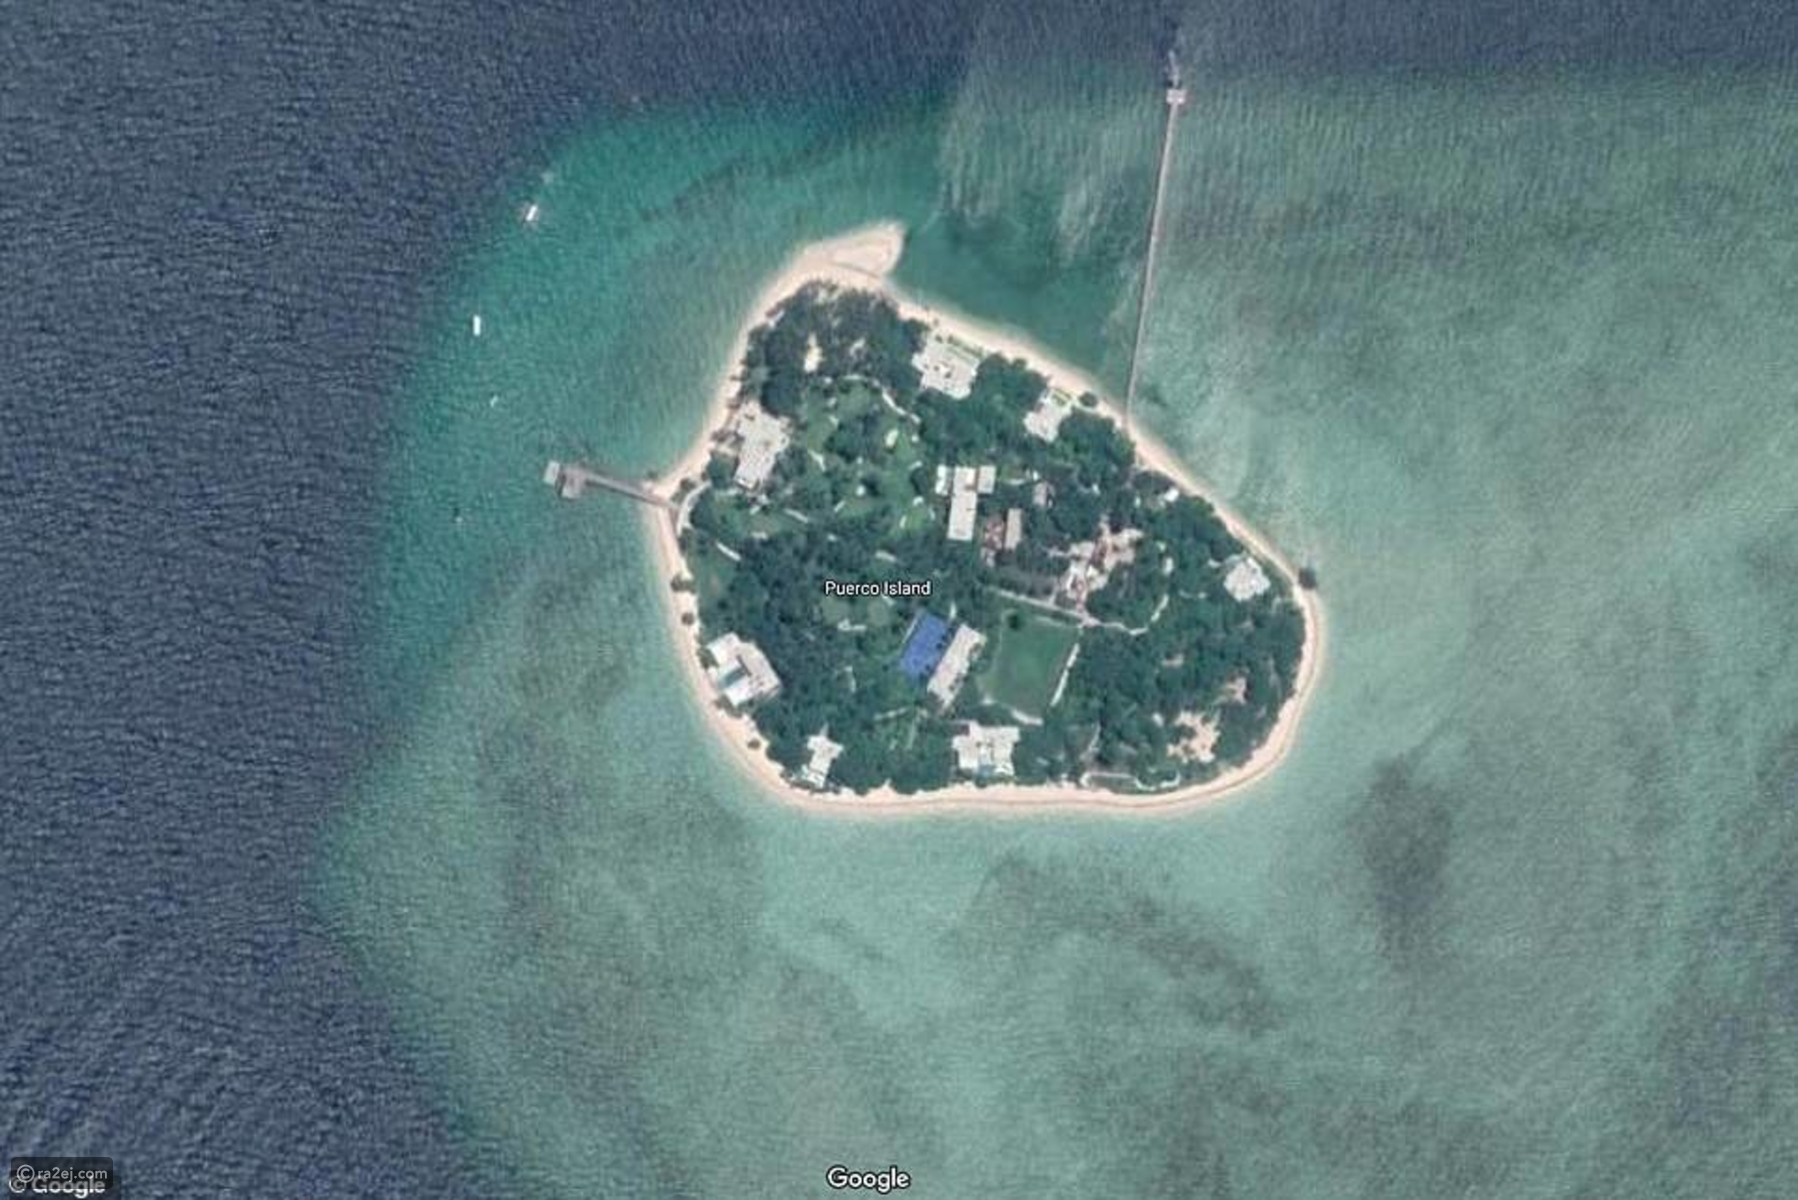 جزيرة بانوا التي يقع عليها المنتجع